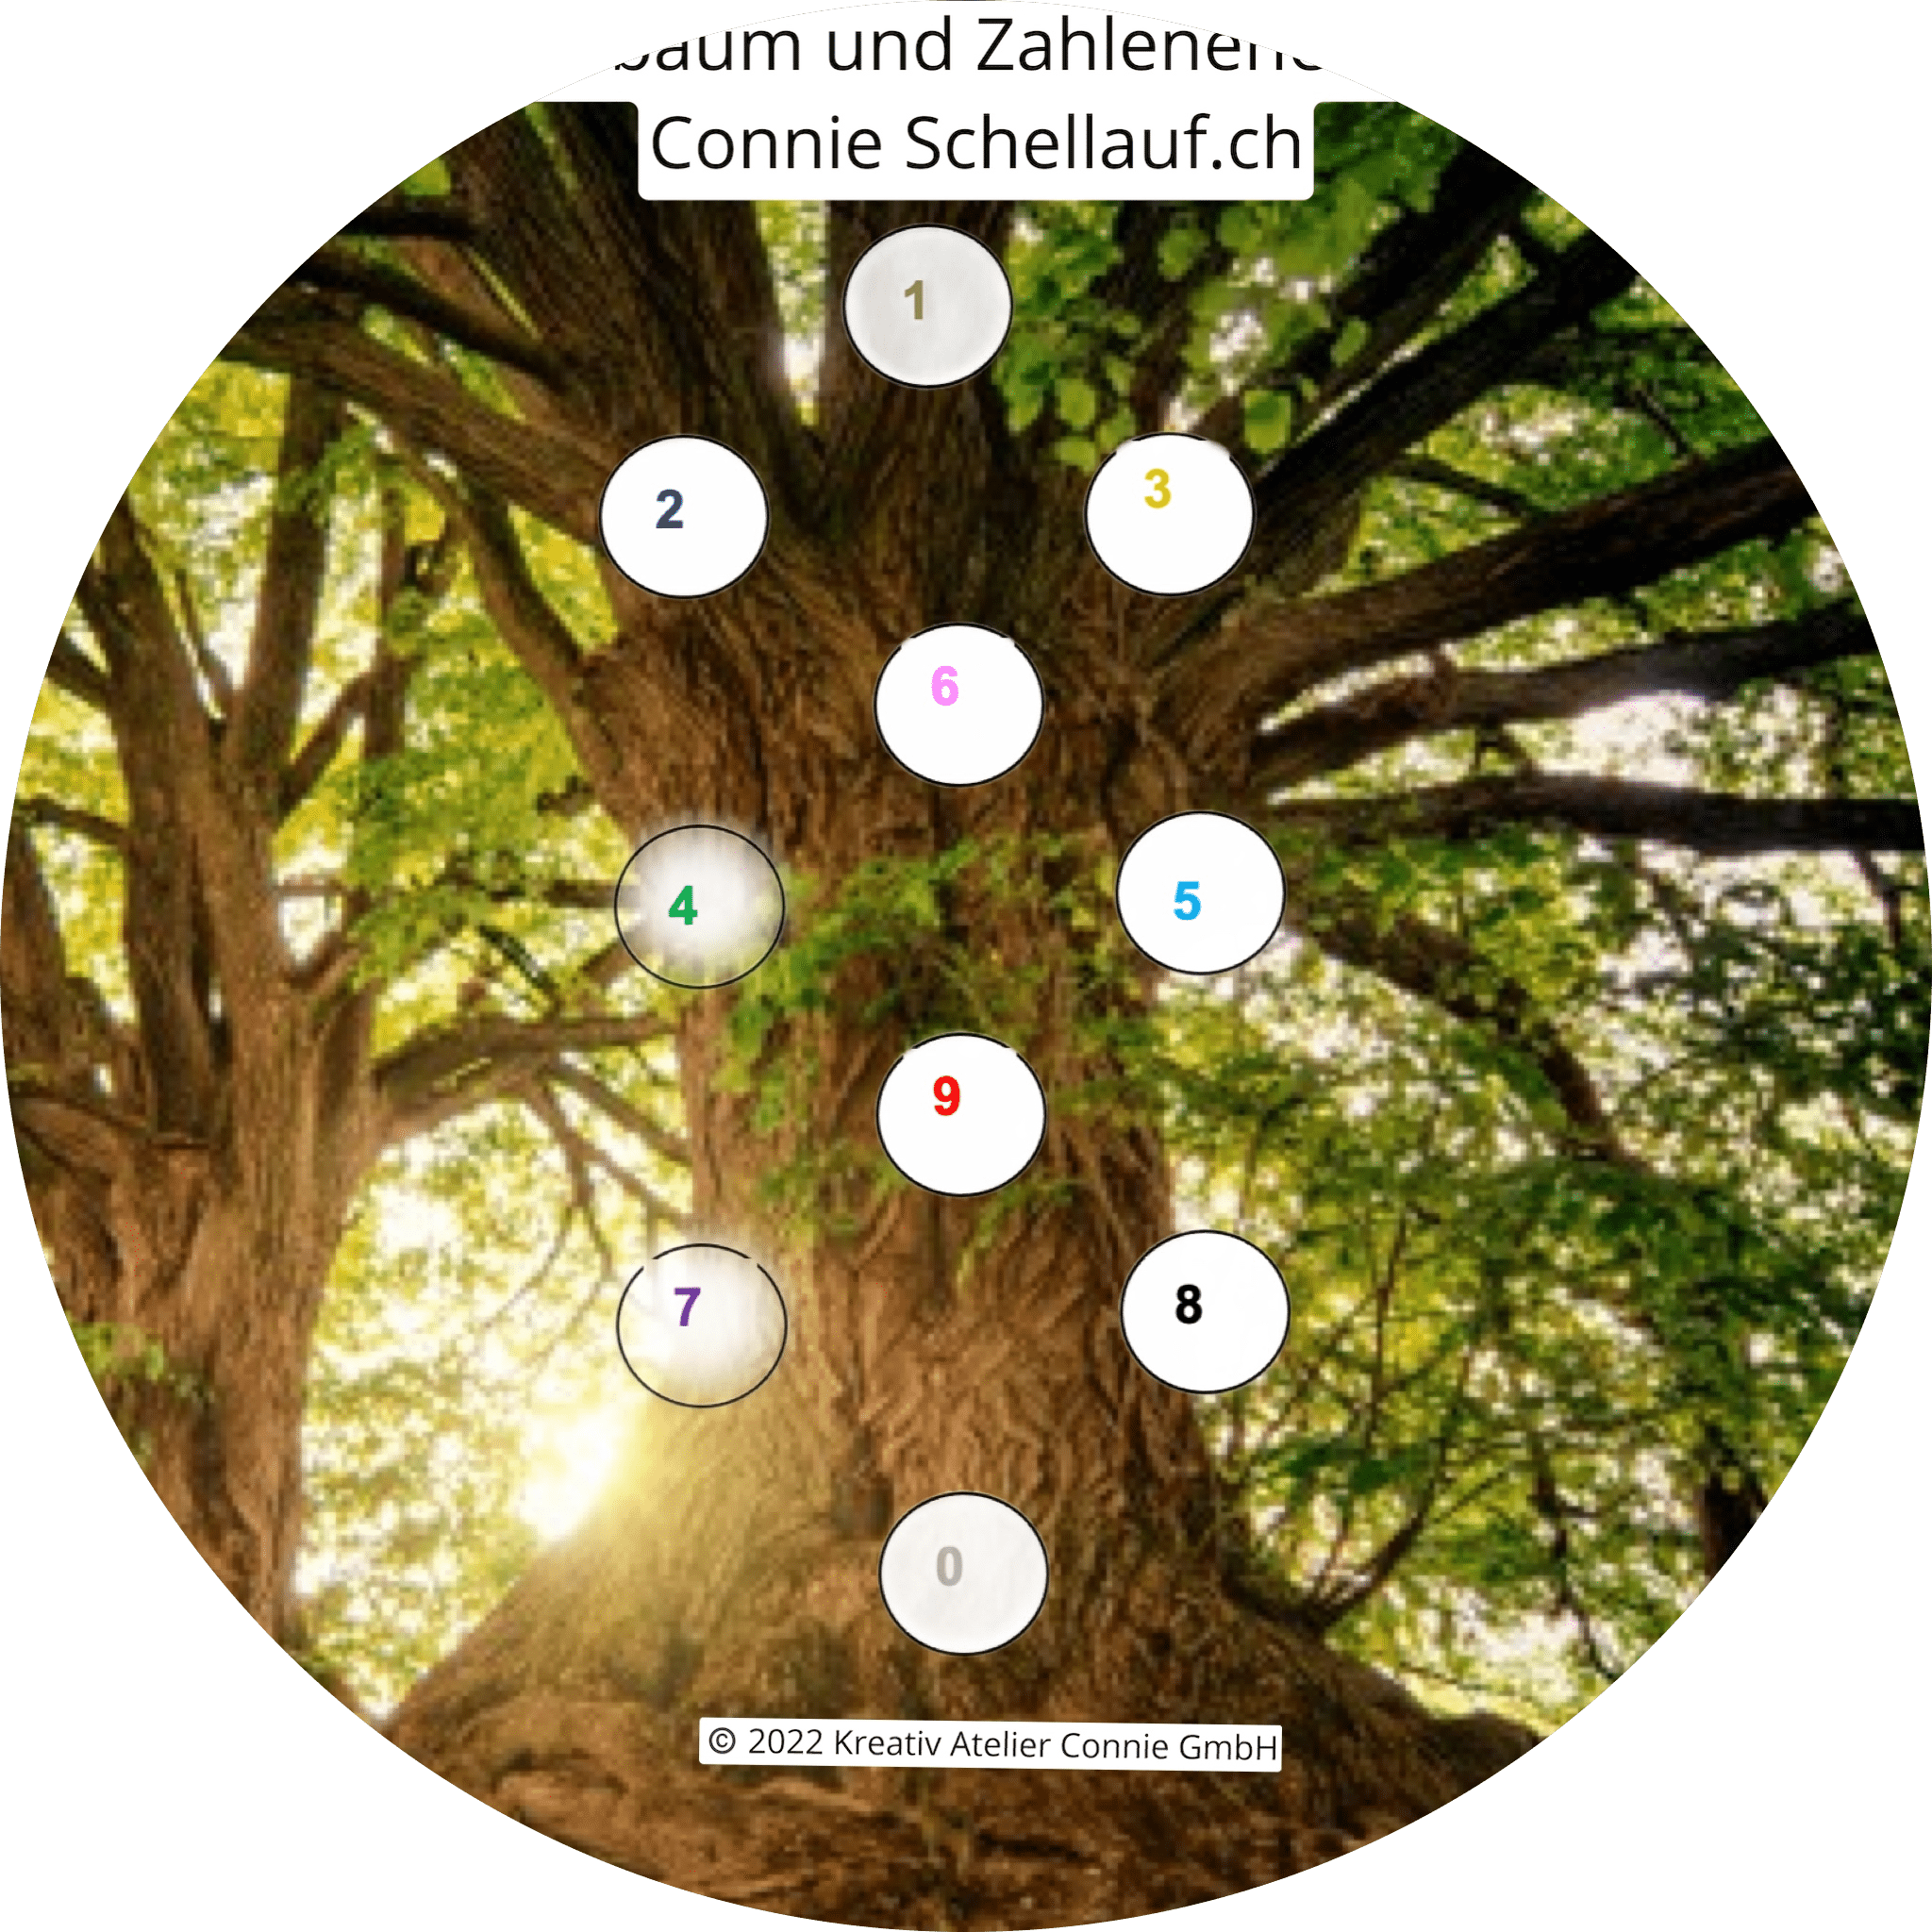 Lebensbaum und Zahlenenergie Seminar mit Connie Schellauf.ch